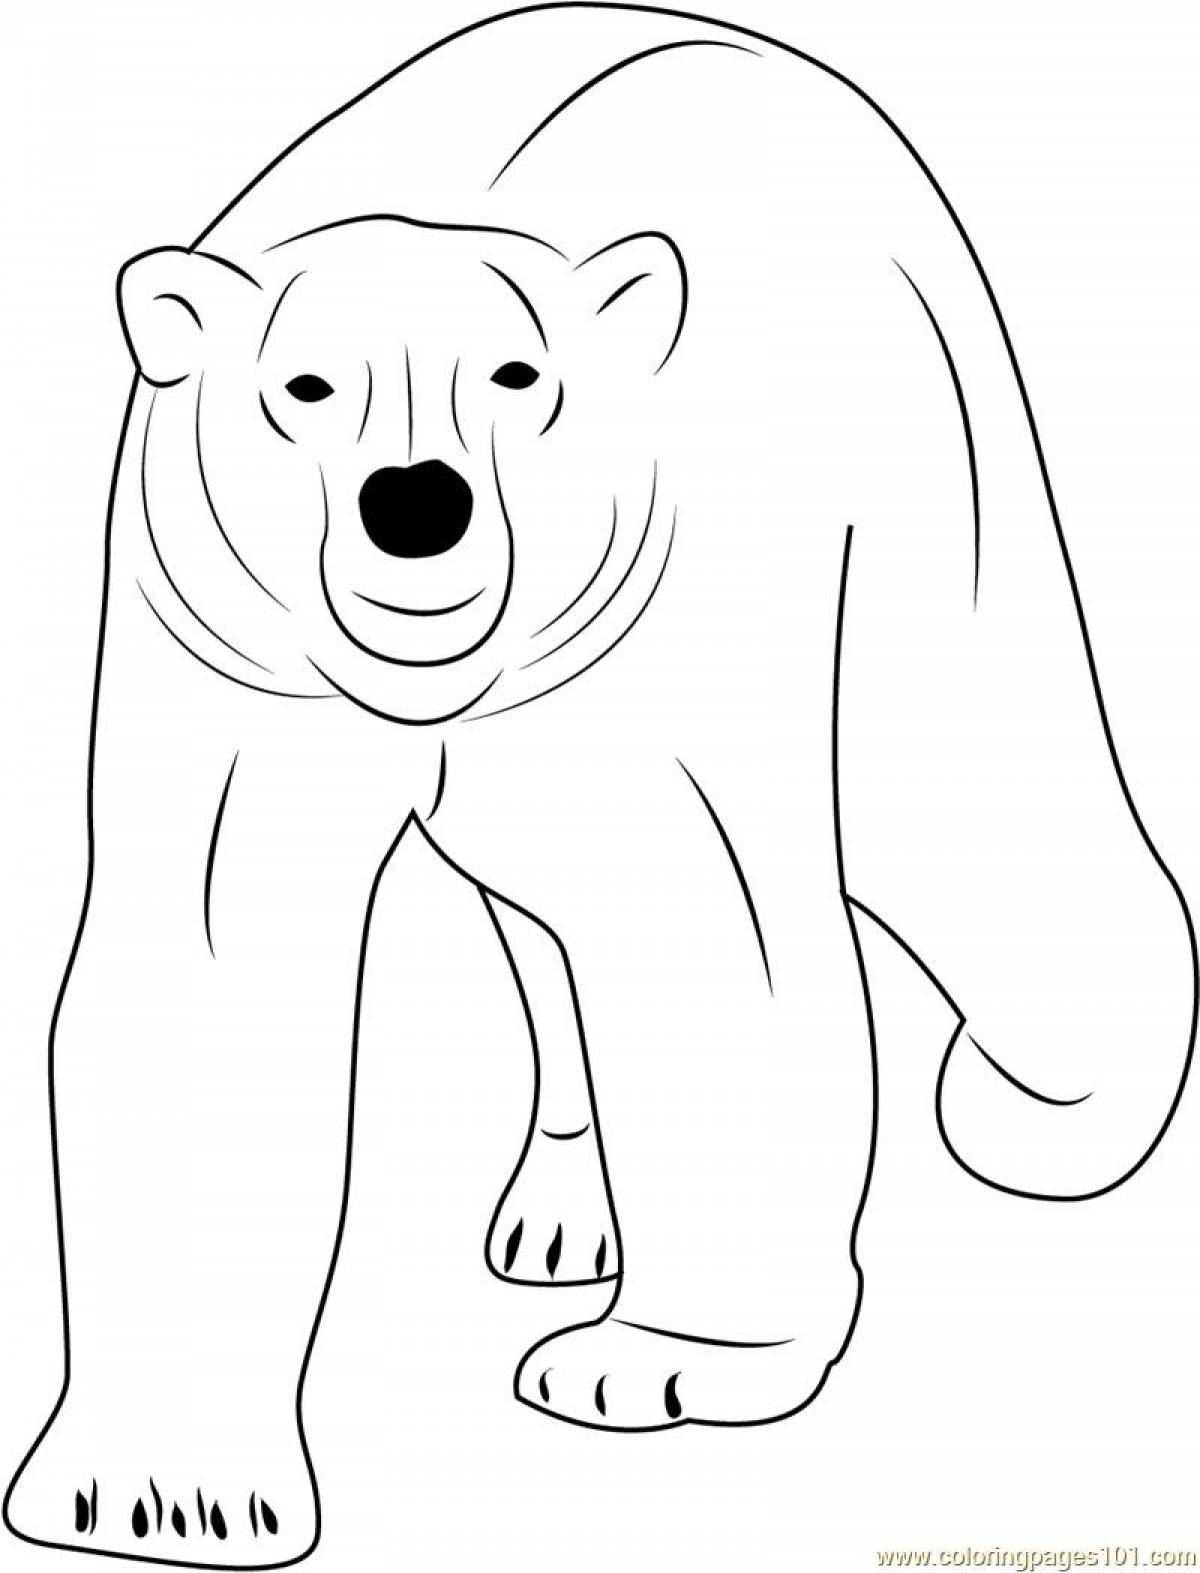 Игривая страница раскраски белого медведя для детей